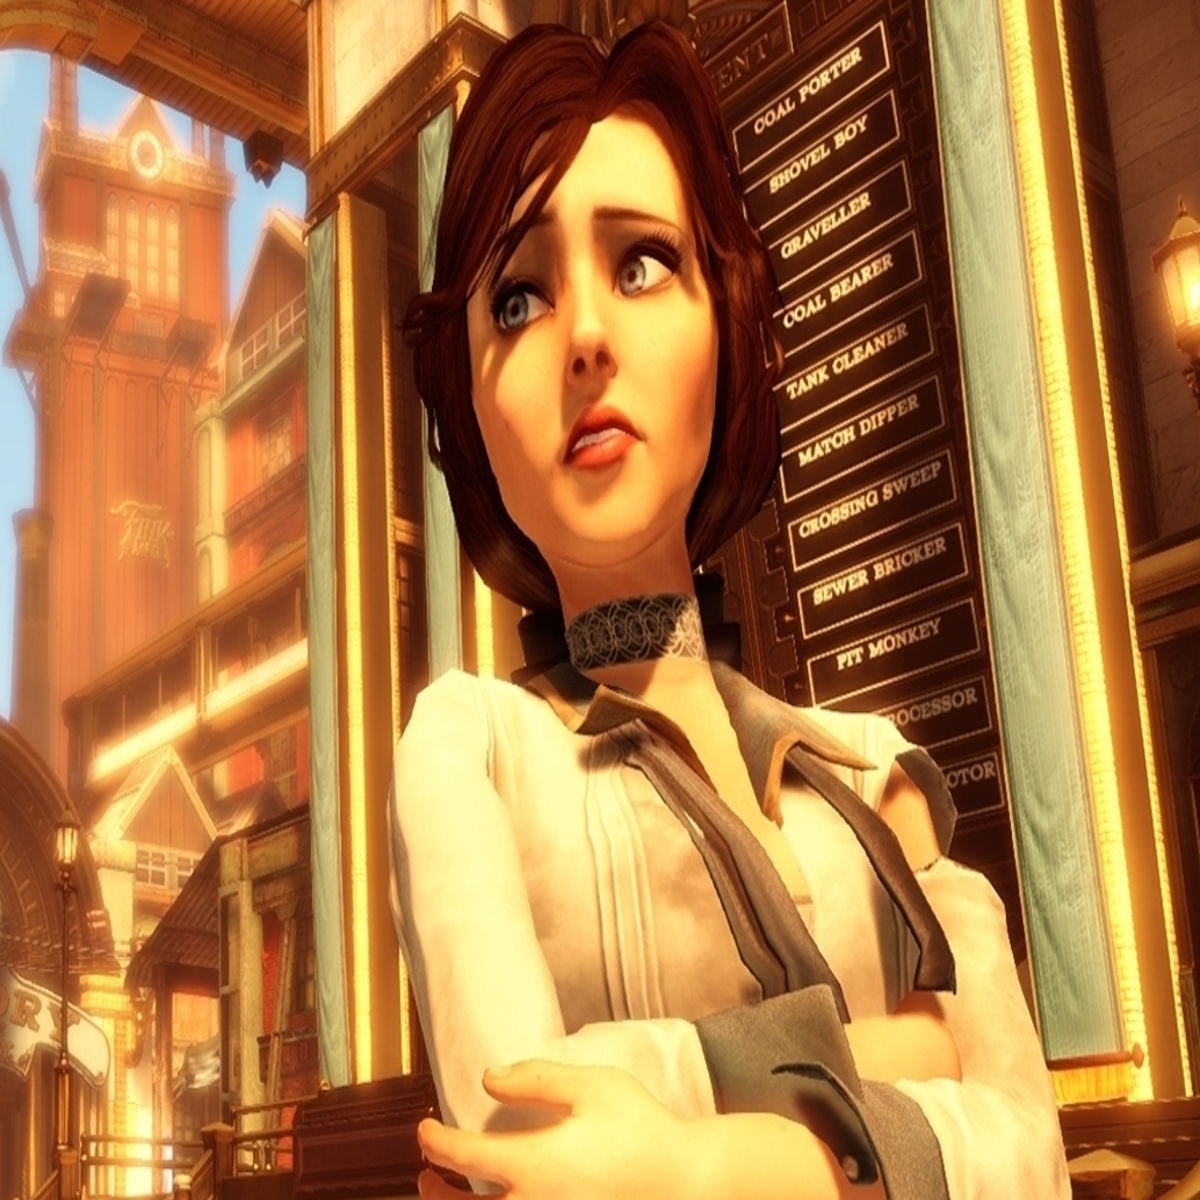 Looking back at 5 years of BioShock Infinite